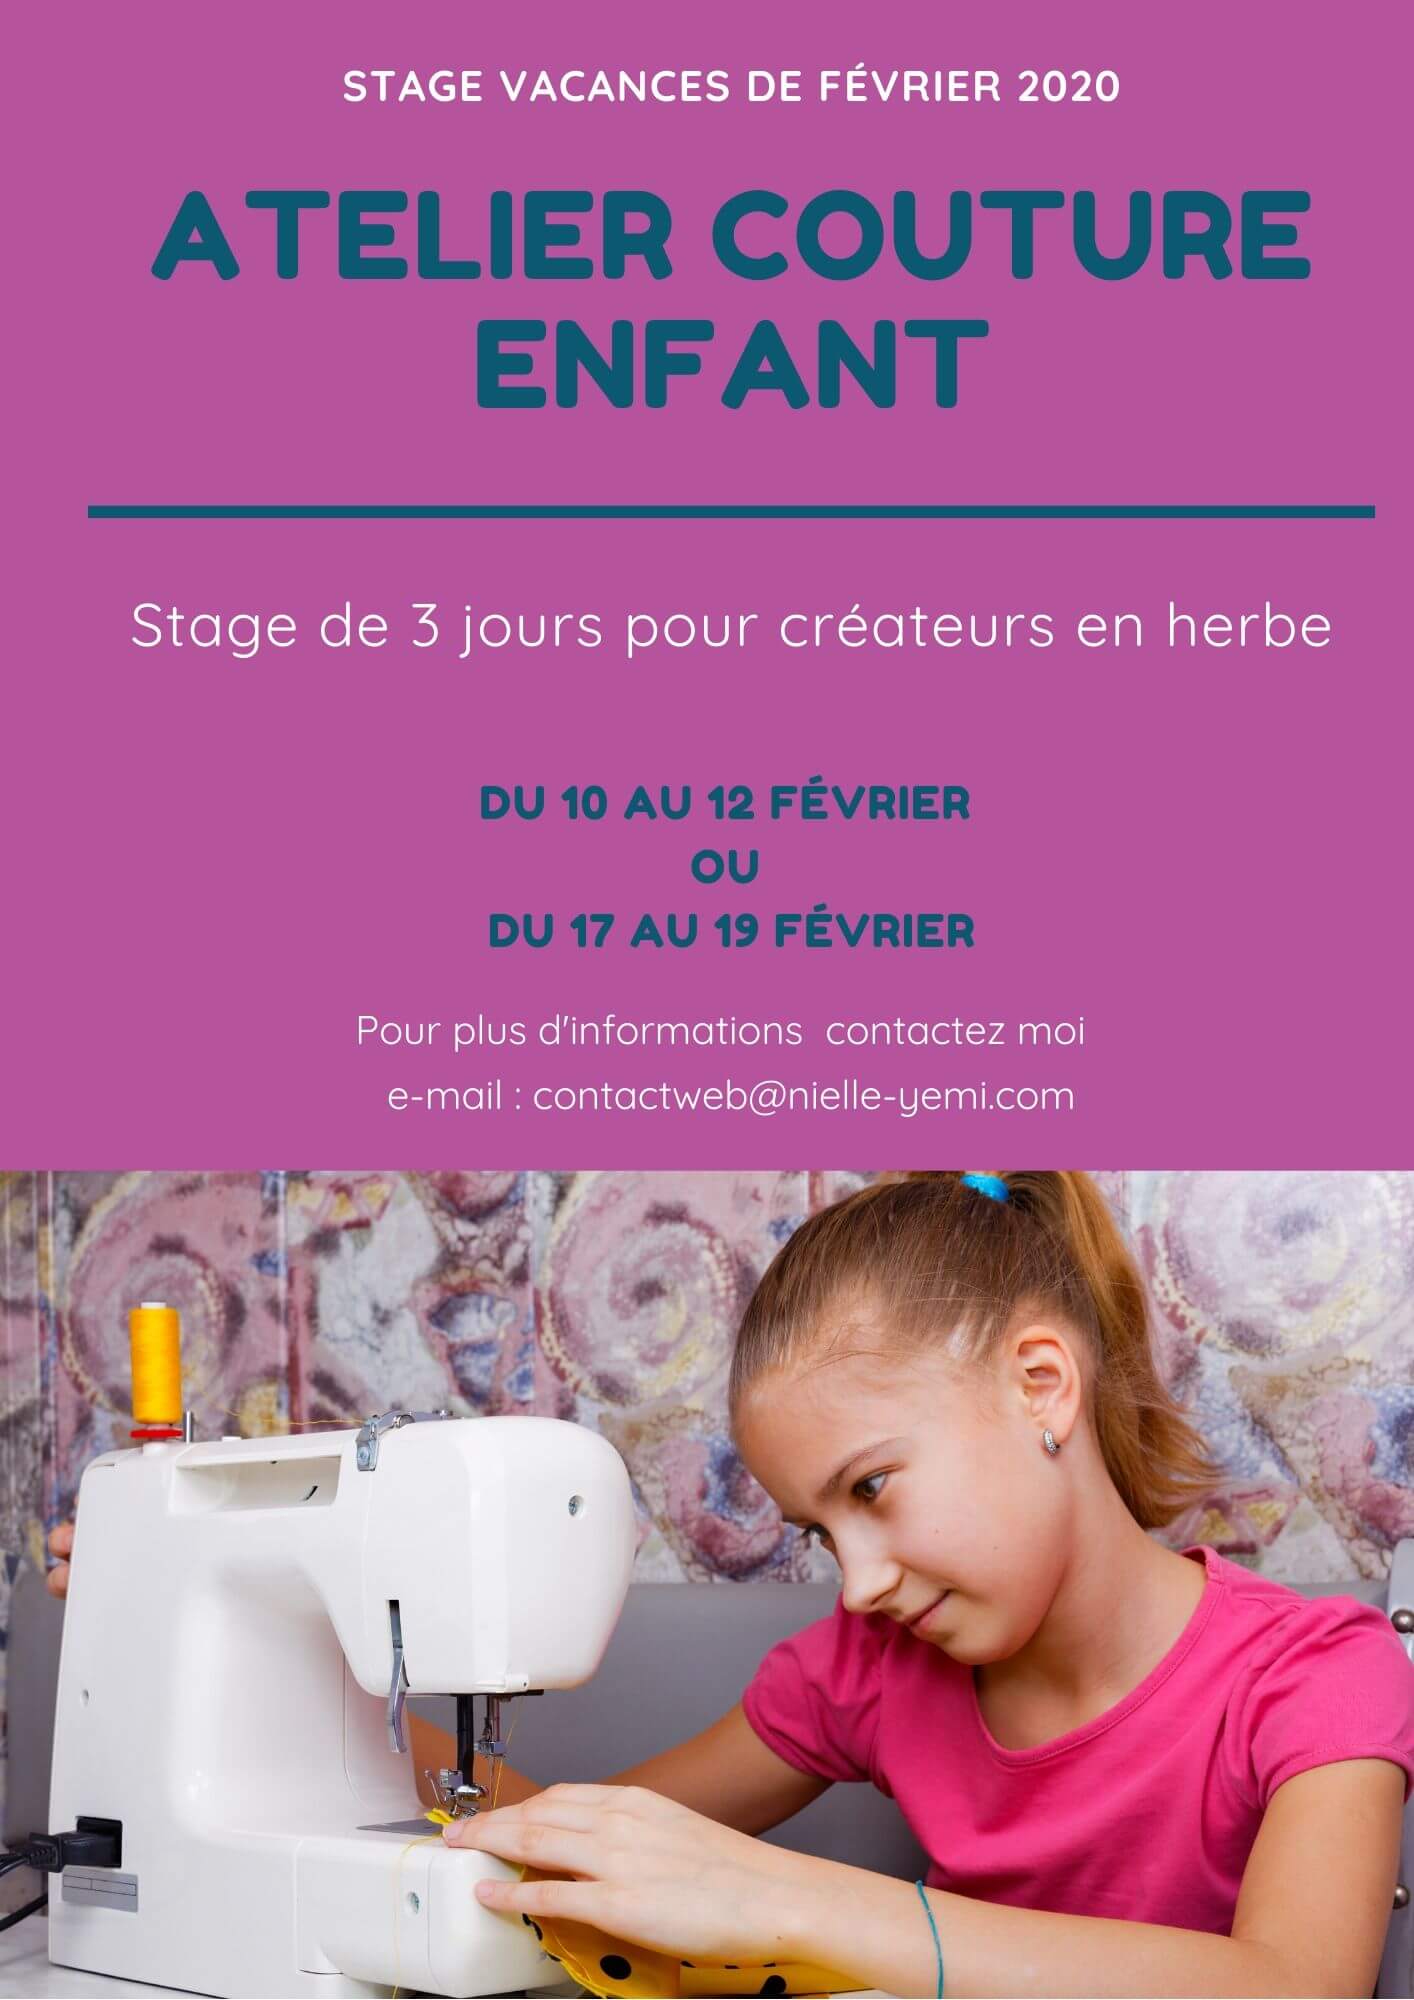 Stage couture enfant vacances de Février 2020 Mennecy en Essonne